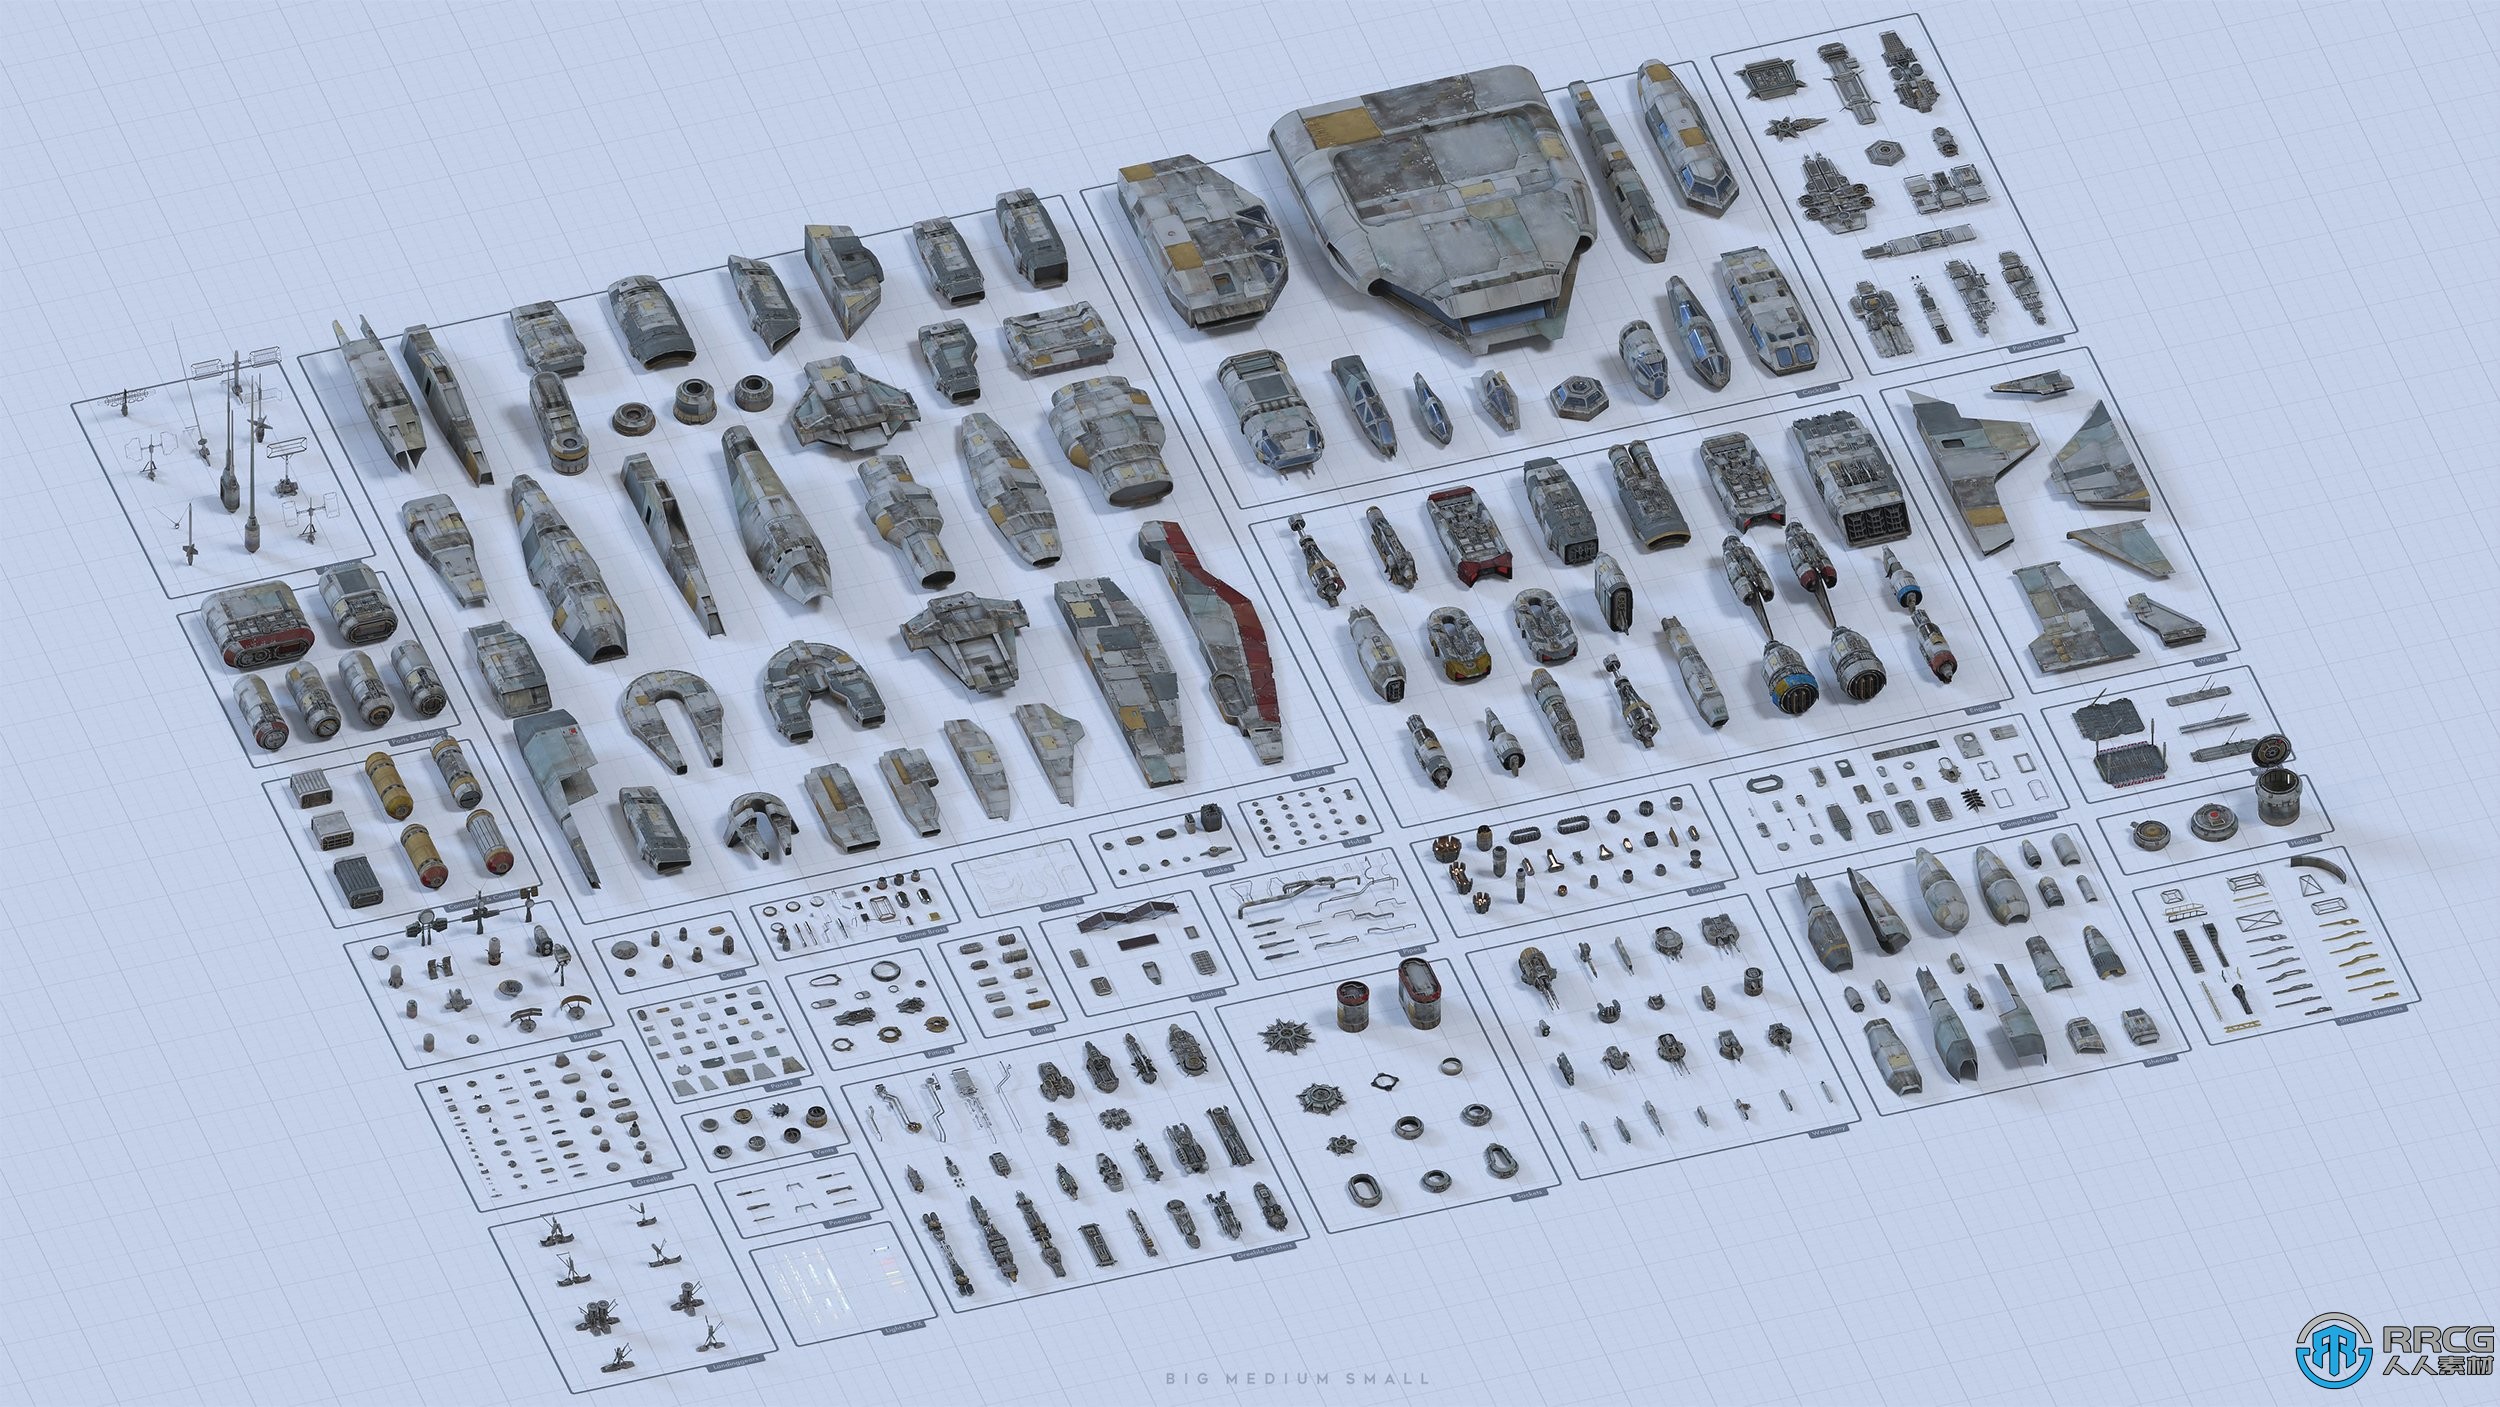 600组完整宇宙飞船星际舰队与相关人员3D模型合集第二季